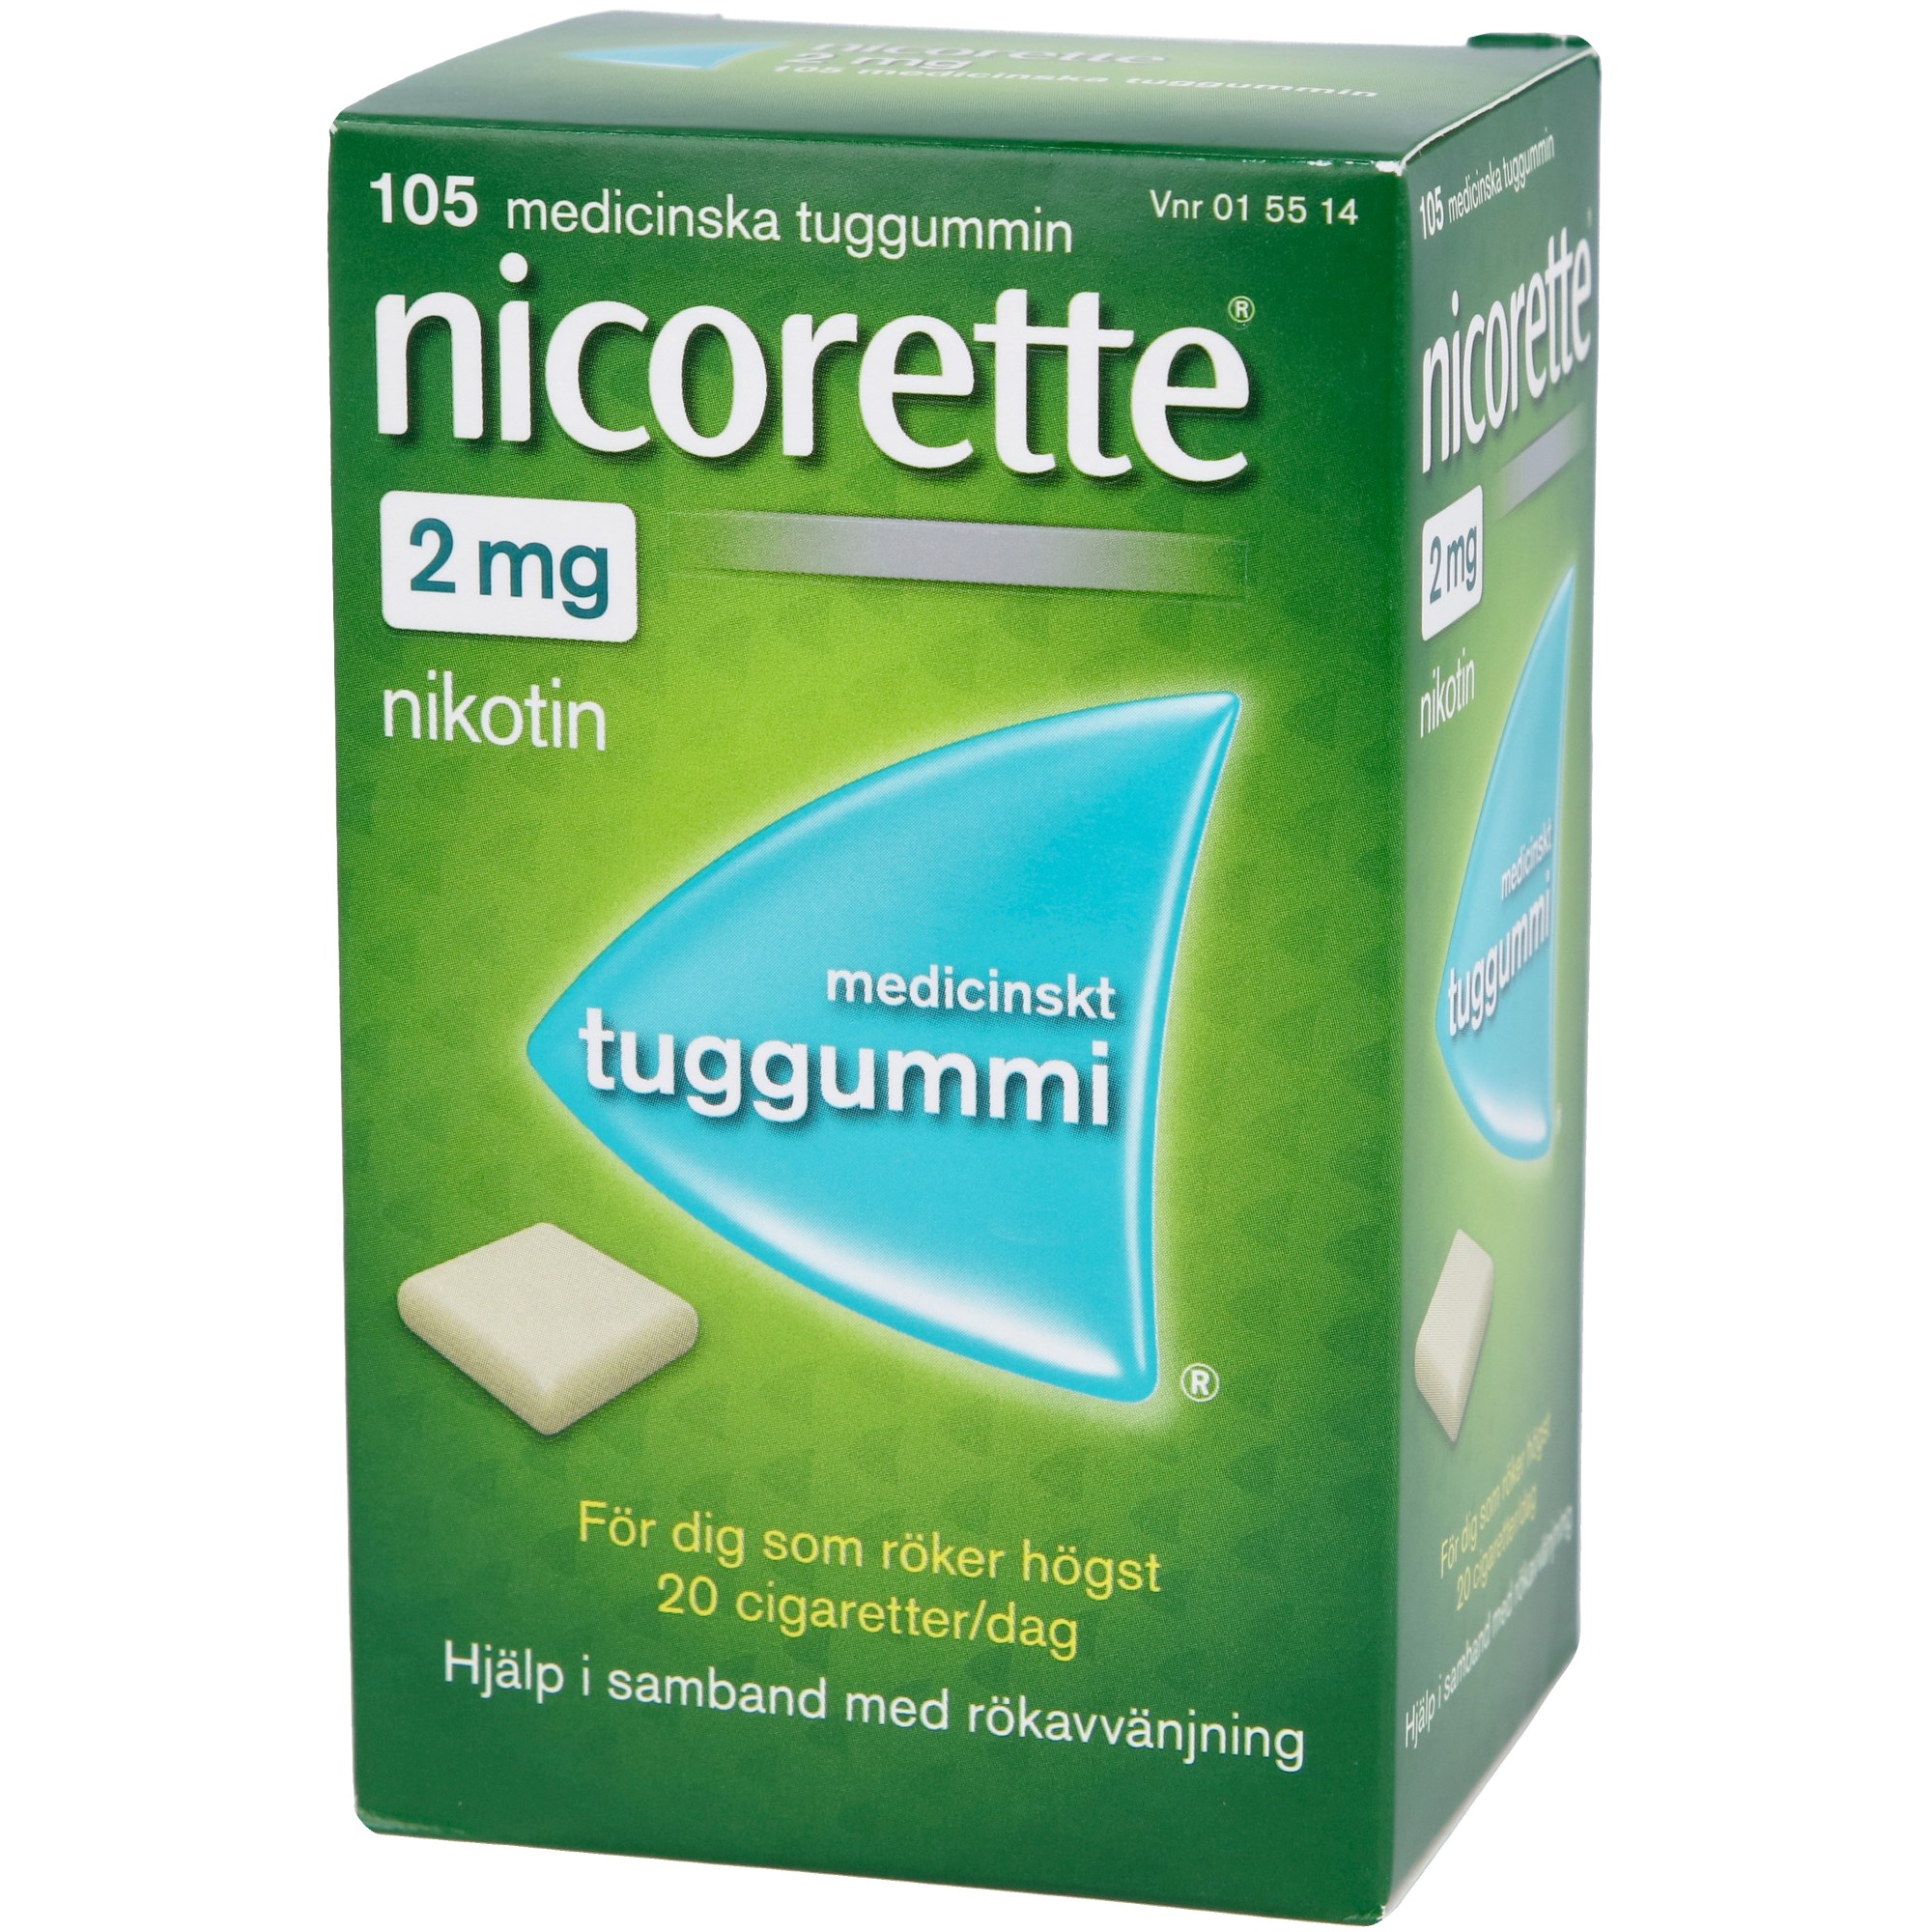 Läs mer om Nicorette Medicinskt tuggummi 2mg 105 st